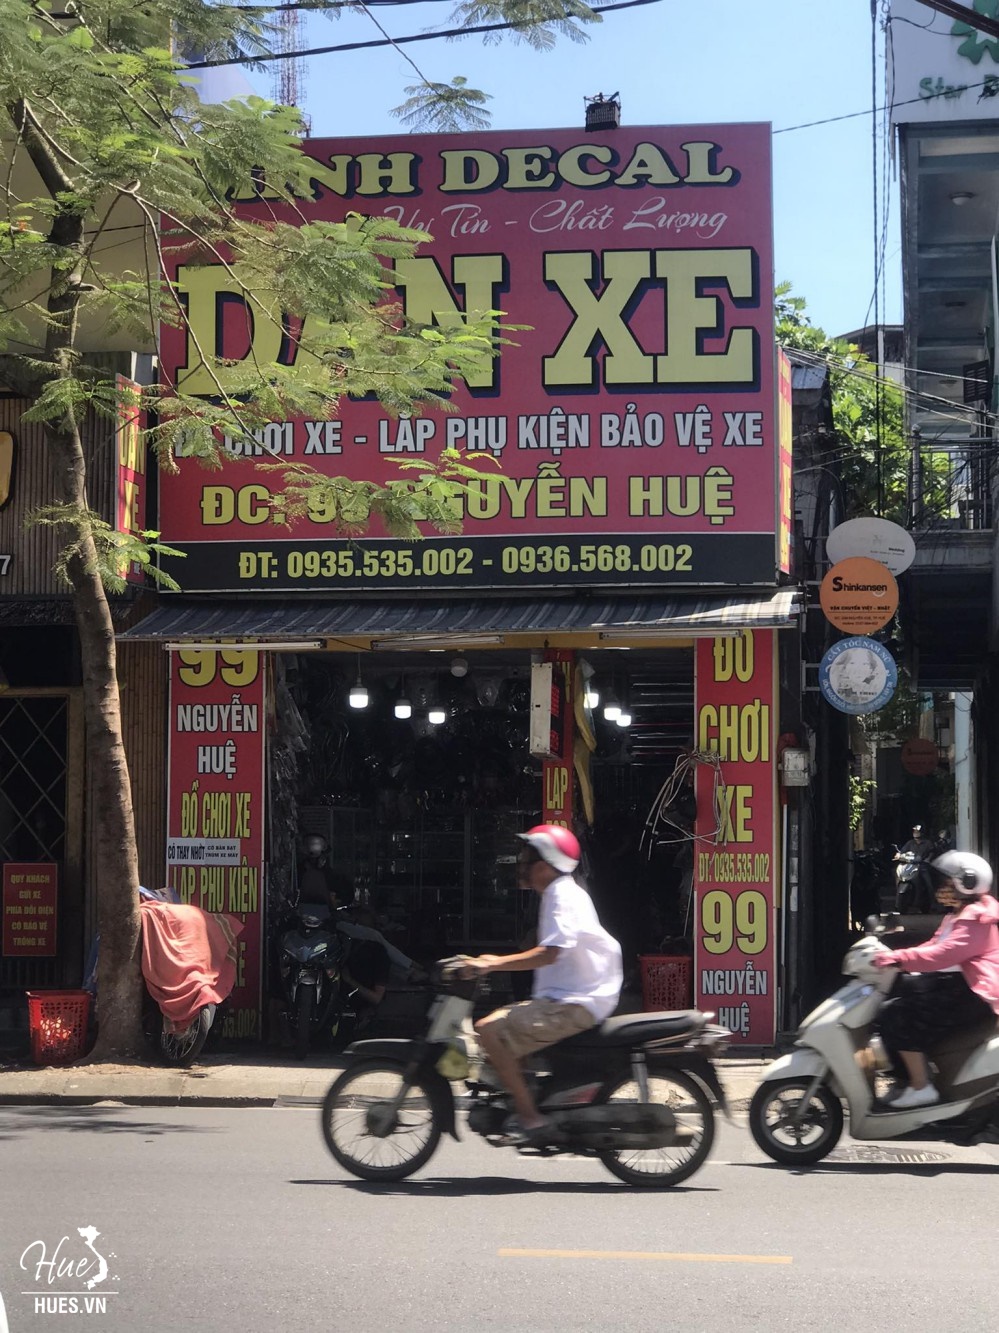 Cửa hàng dán xe Minh decal